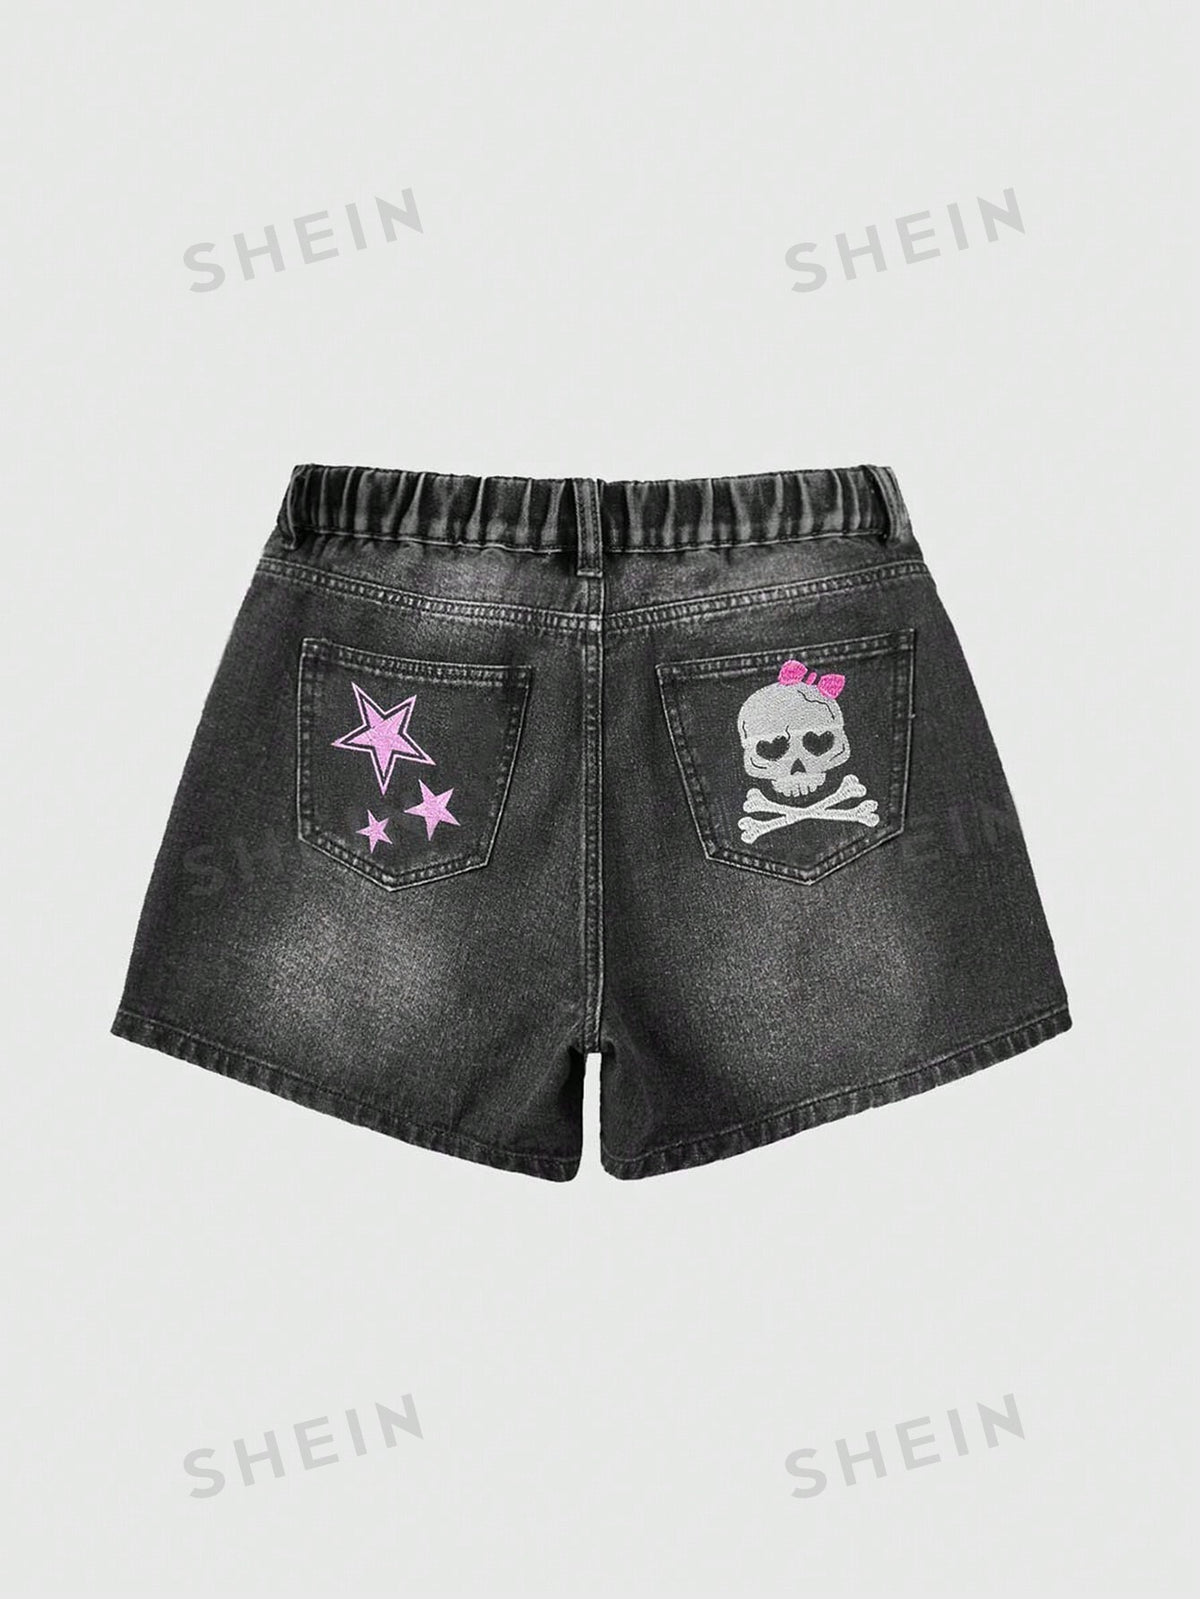 ROMWE Grunge Punk Plus Skull & Star Print Denim Shorts For Summer